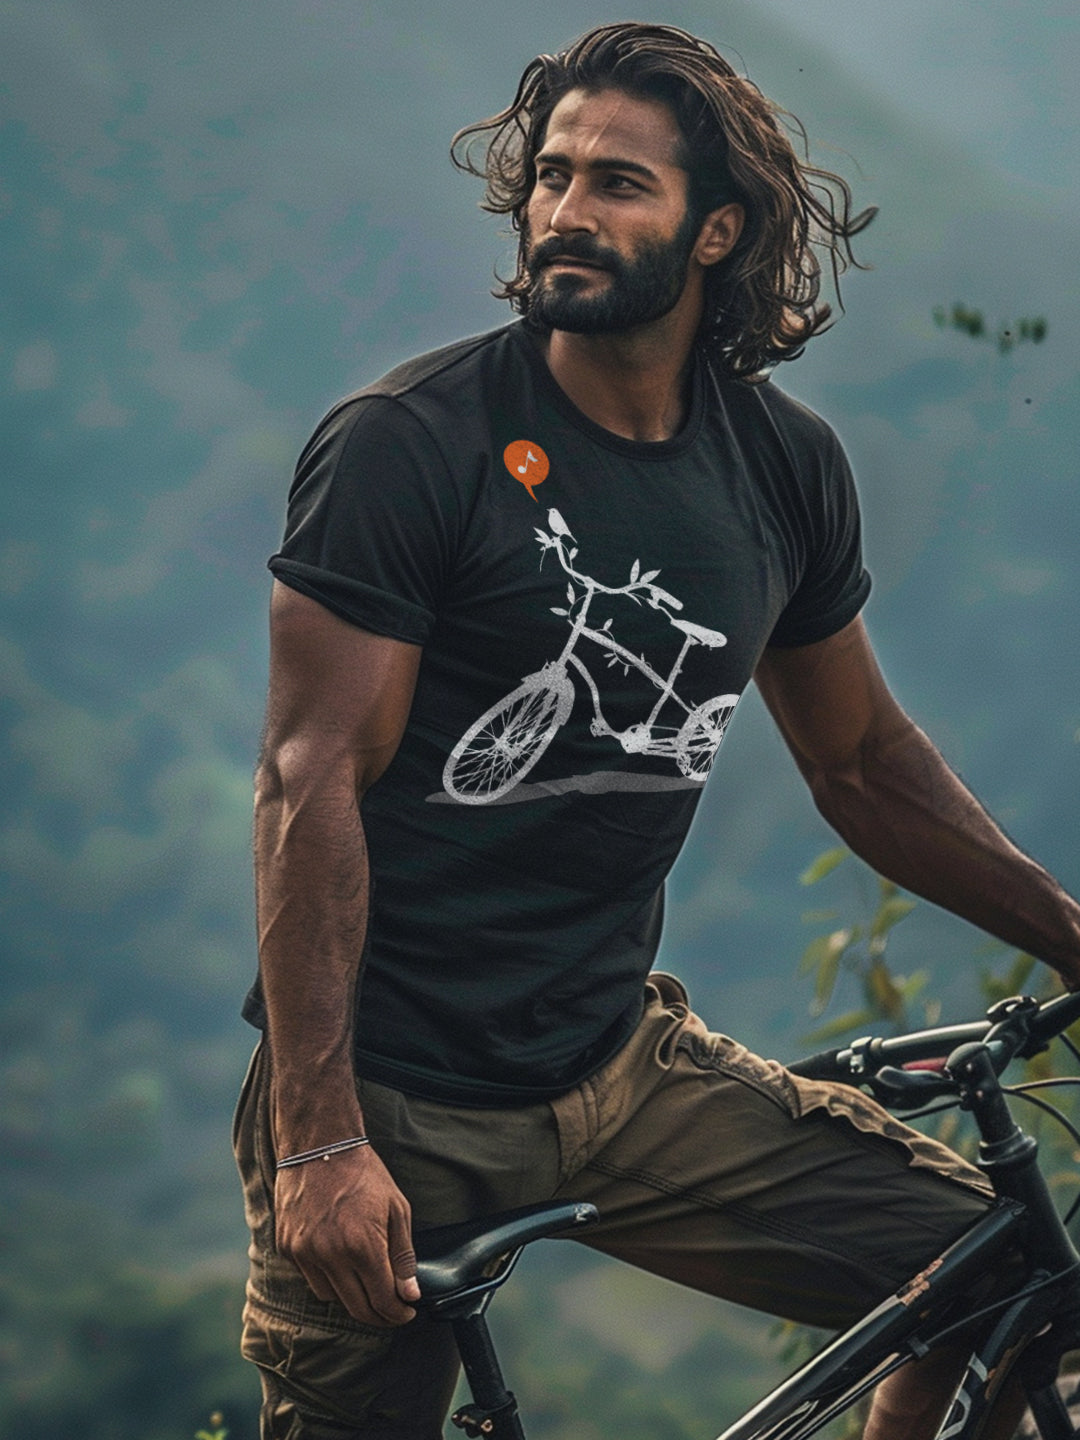 "Nature's Calling" Biking T-Shirt